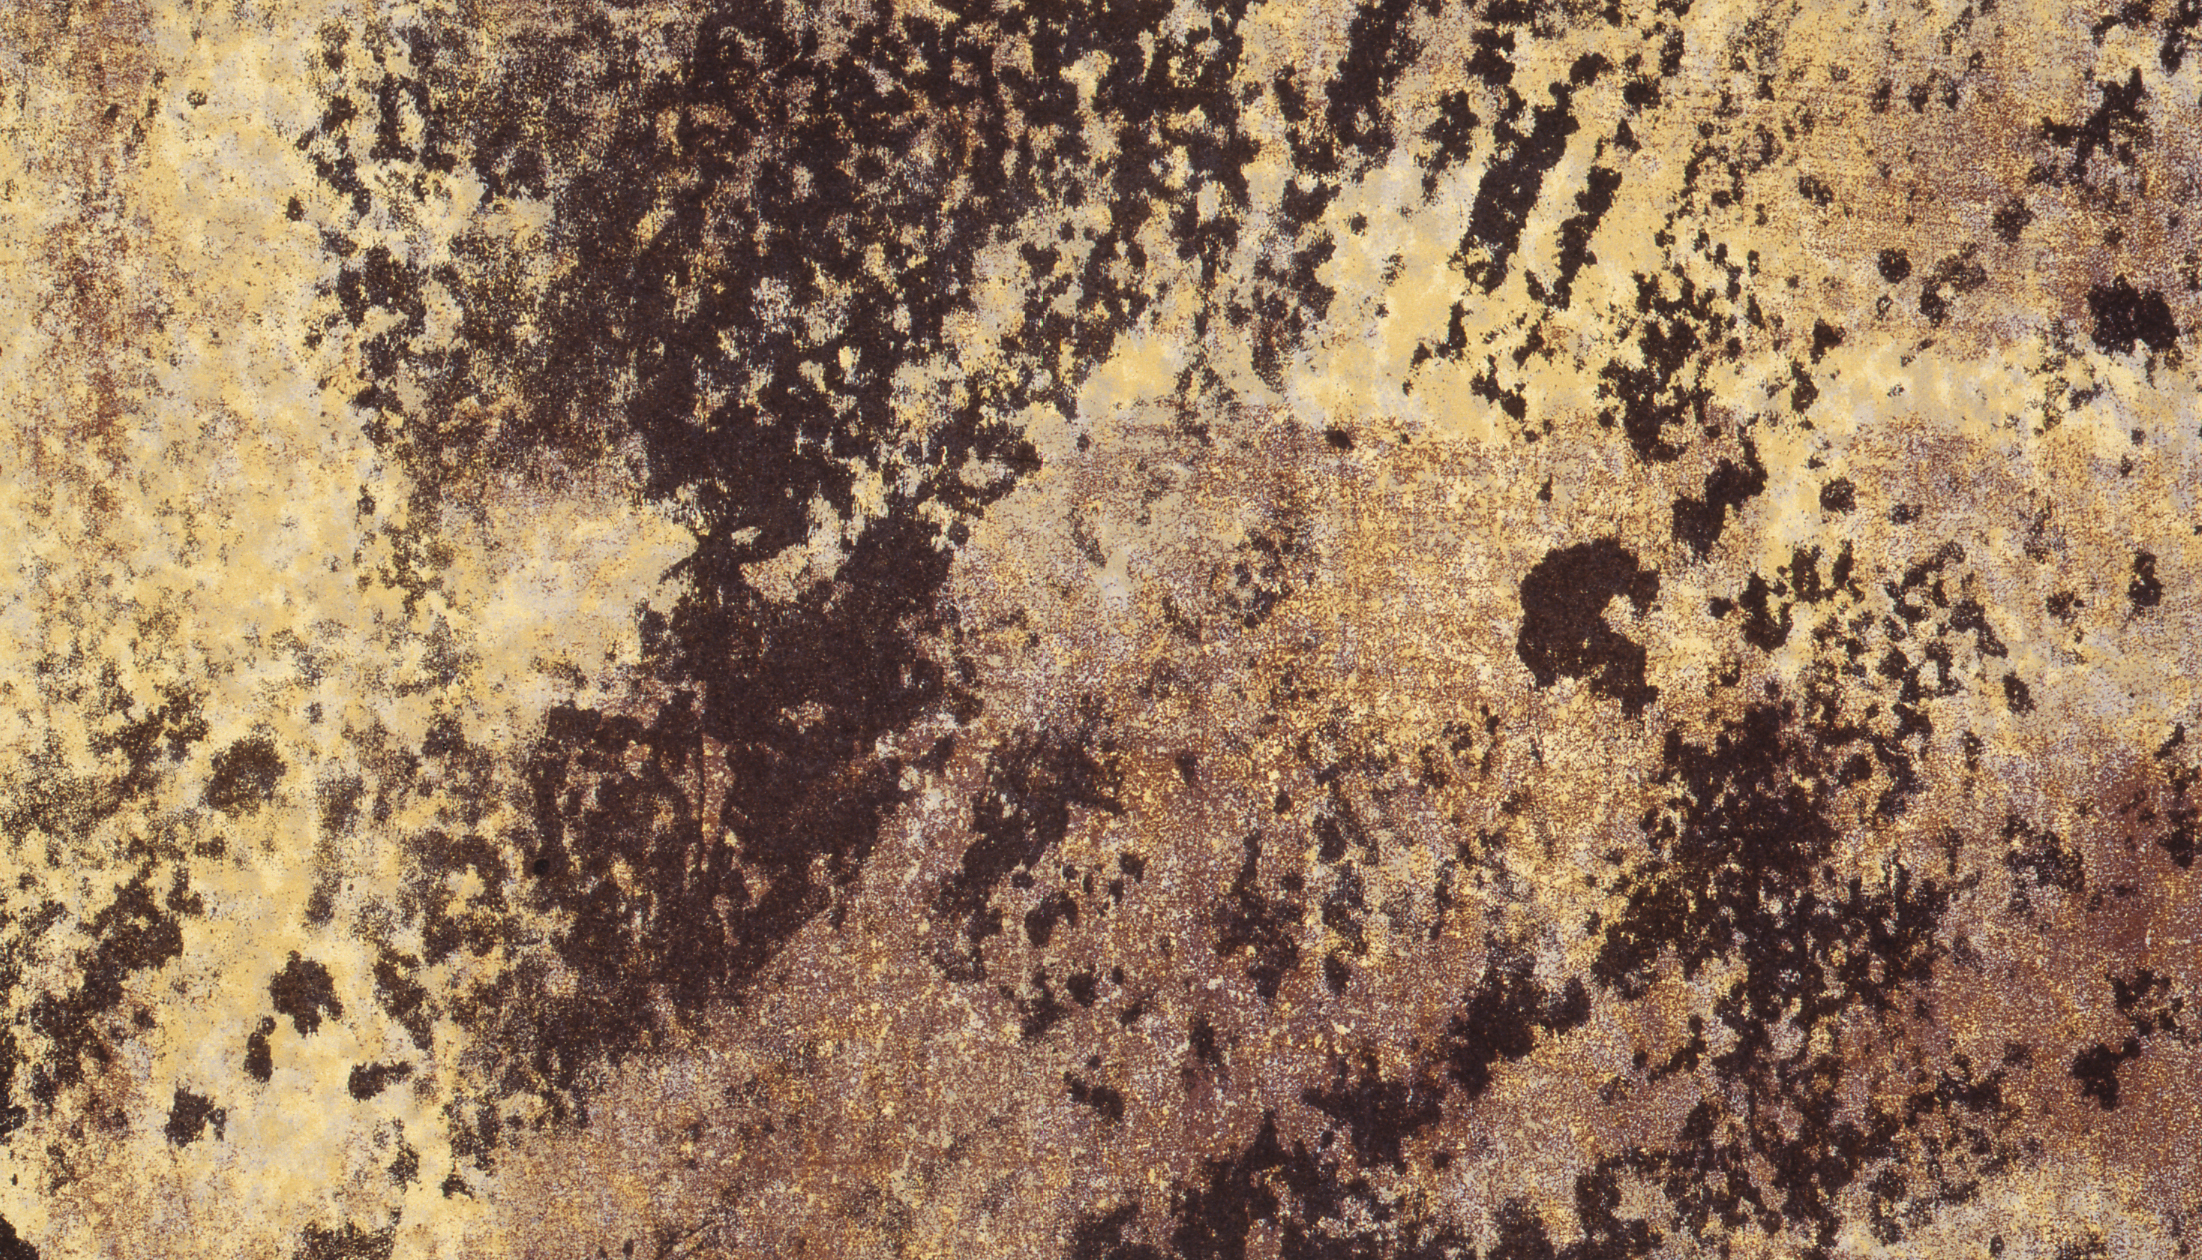 Détail de l'œuvre "Le sol allègre", par Jean Dubuffet, 1962